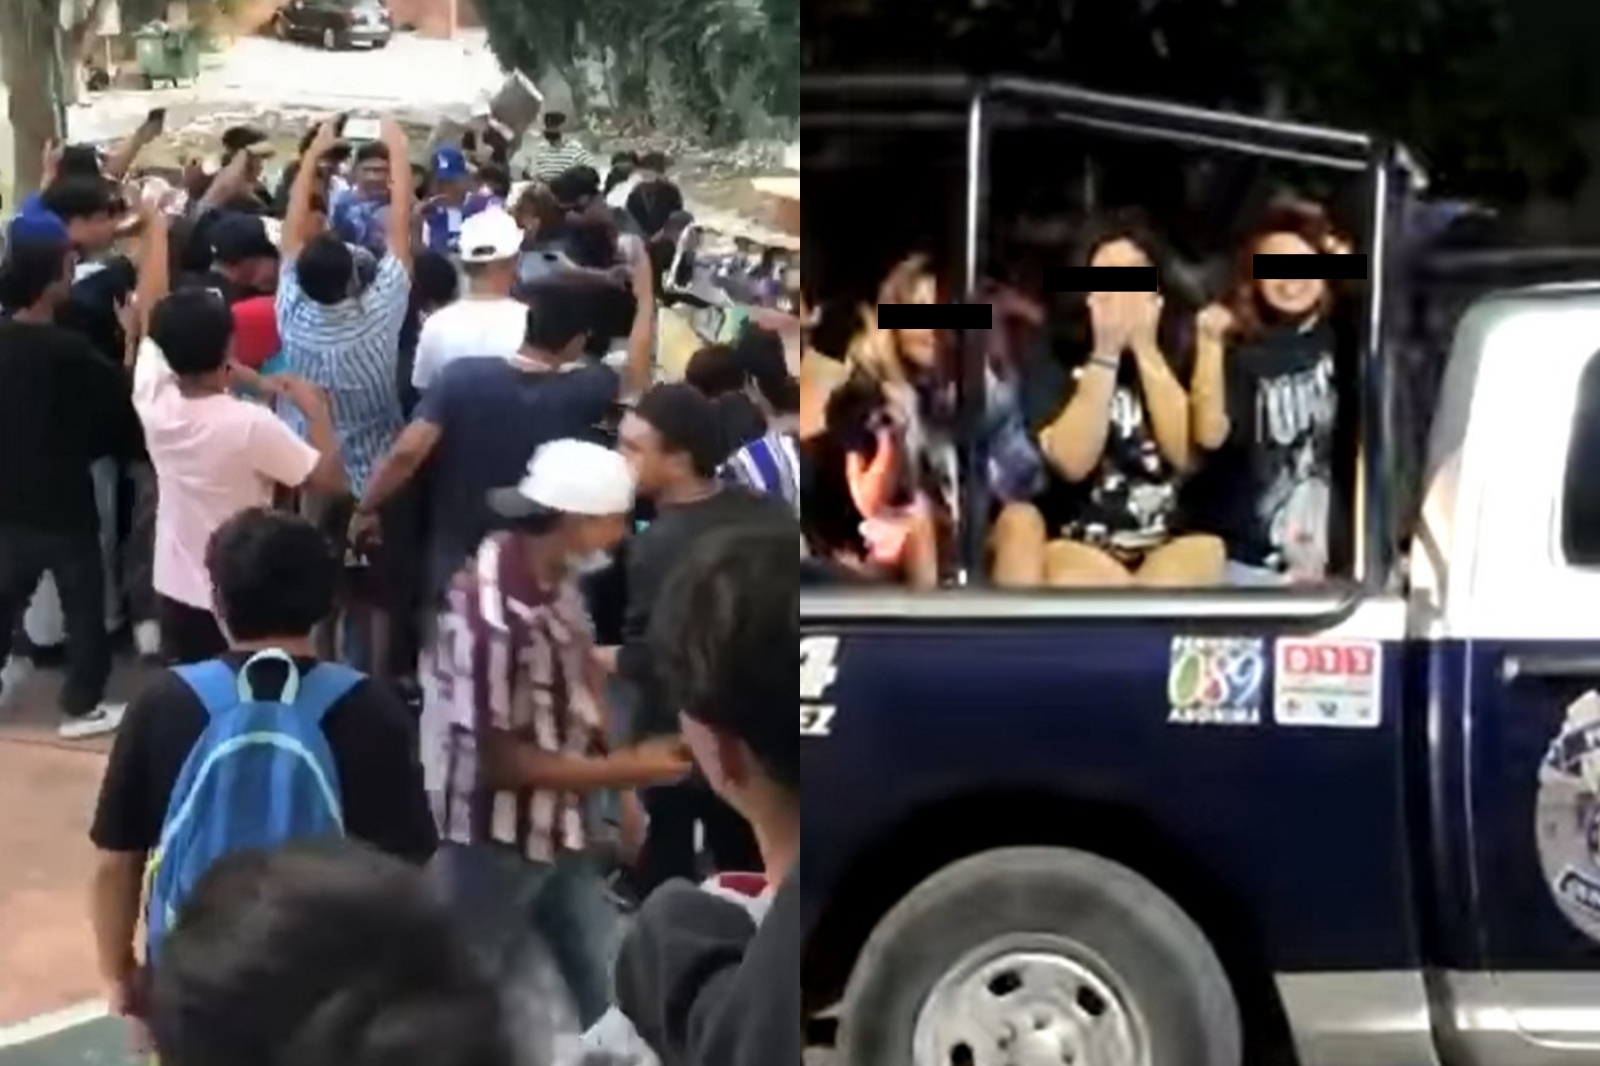 Los menores detenidos tras la trifulca permanecieron en el 'Torito' de Cancún hasta el domingo, cuando fueron liberados tras pagar una fianza